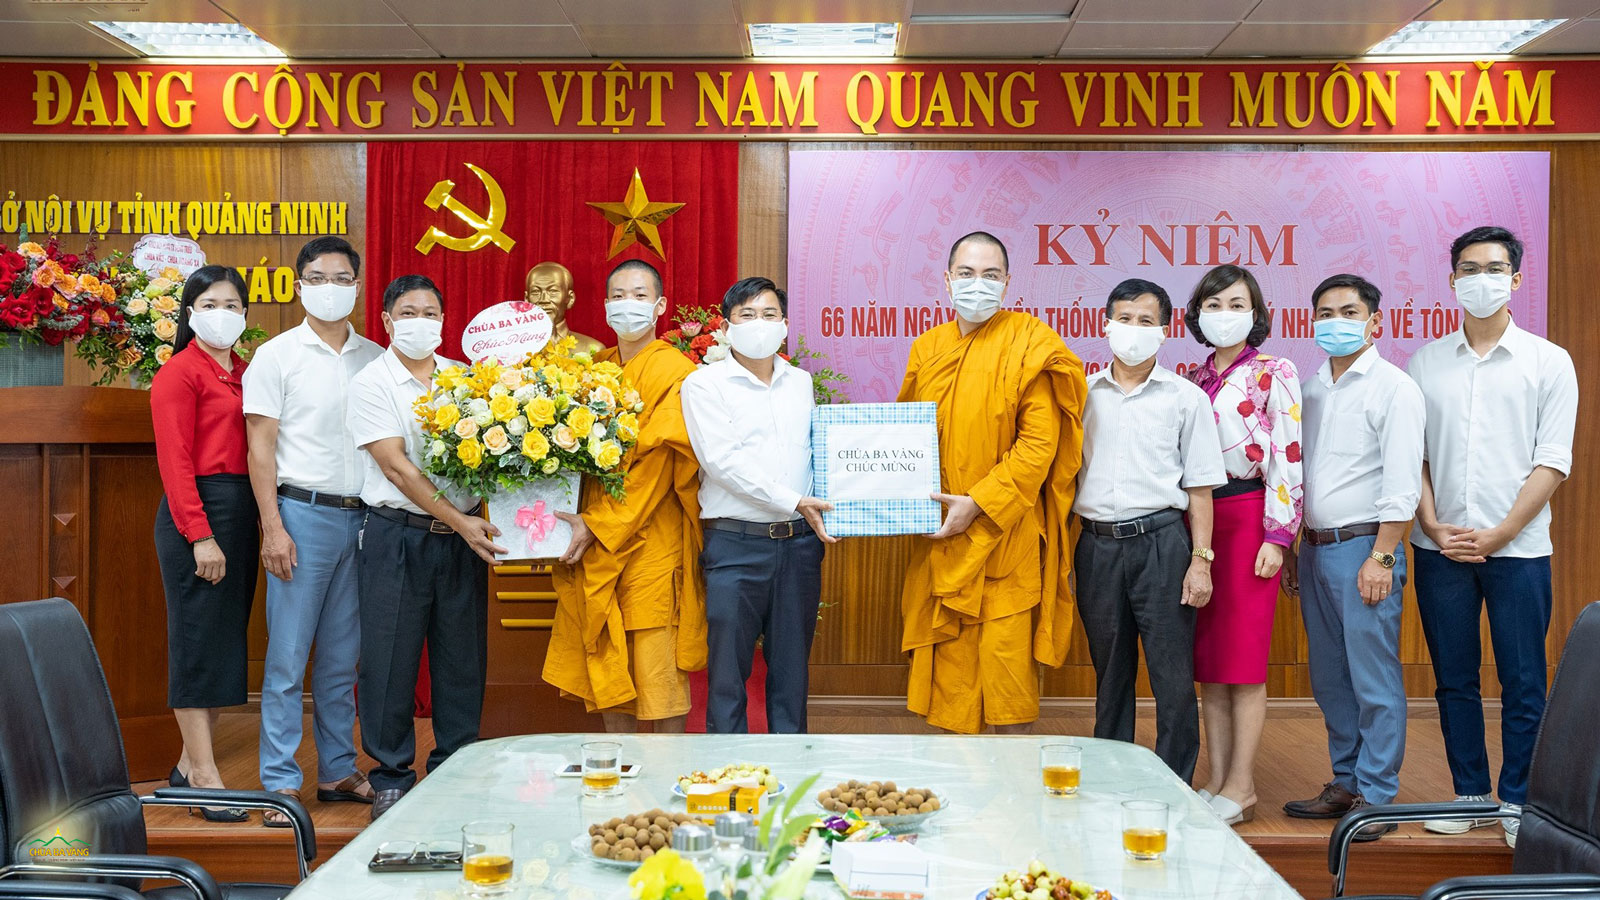 Chư Tăng gửi phần quà cùng lẵng hoa chúc mừng lãnh đạo và cán bộ Ban Tôn giáo tỉnh Quảng Ninh nhân kỉ niệm 66 năm ngày truyền thống của những người làm công tác quản lý Nhà nước về tôn giáo